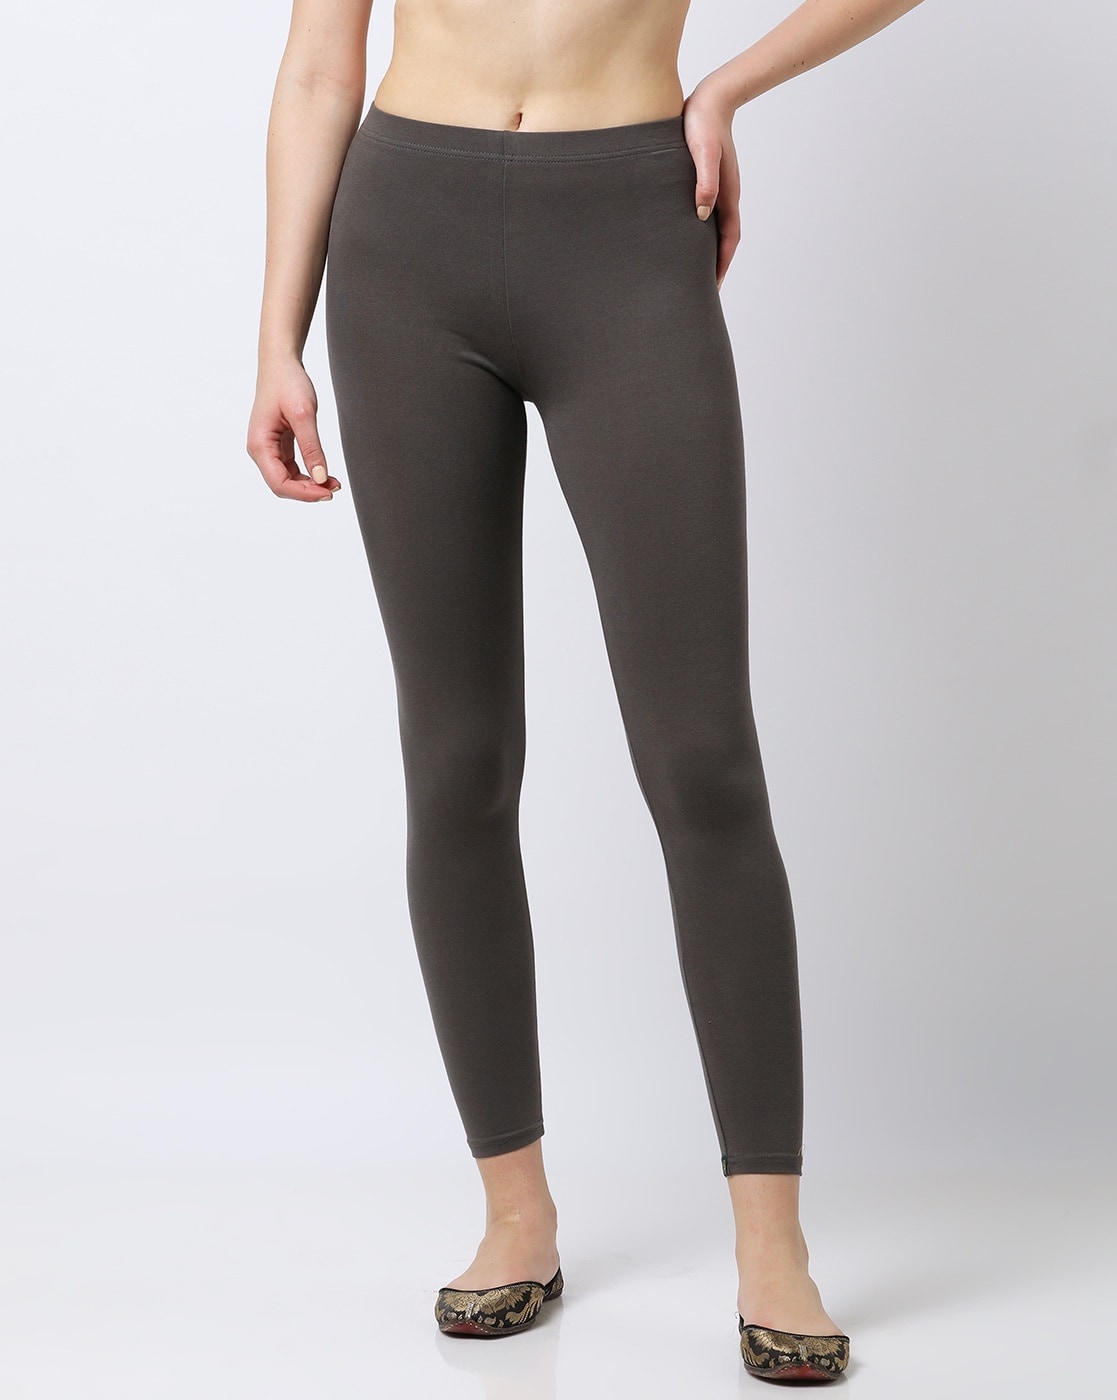 Top more than 106 womens grey leggings